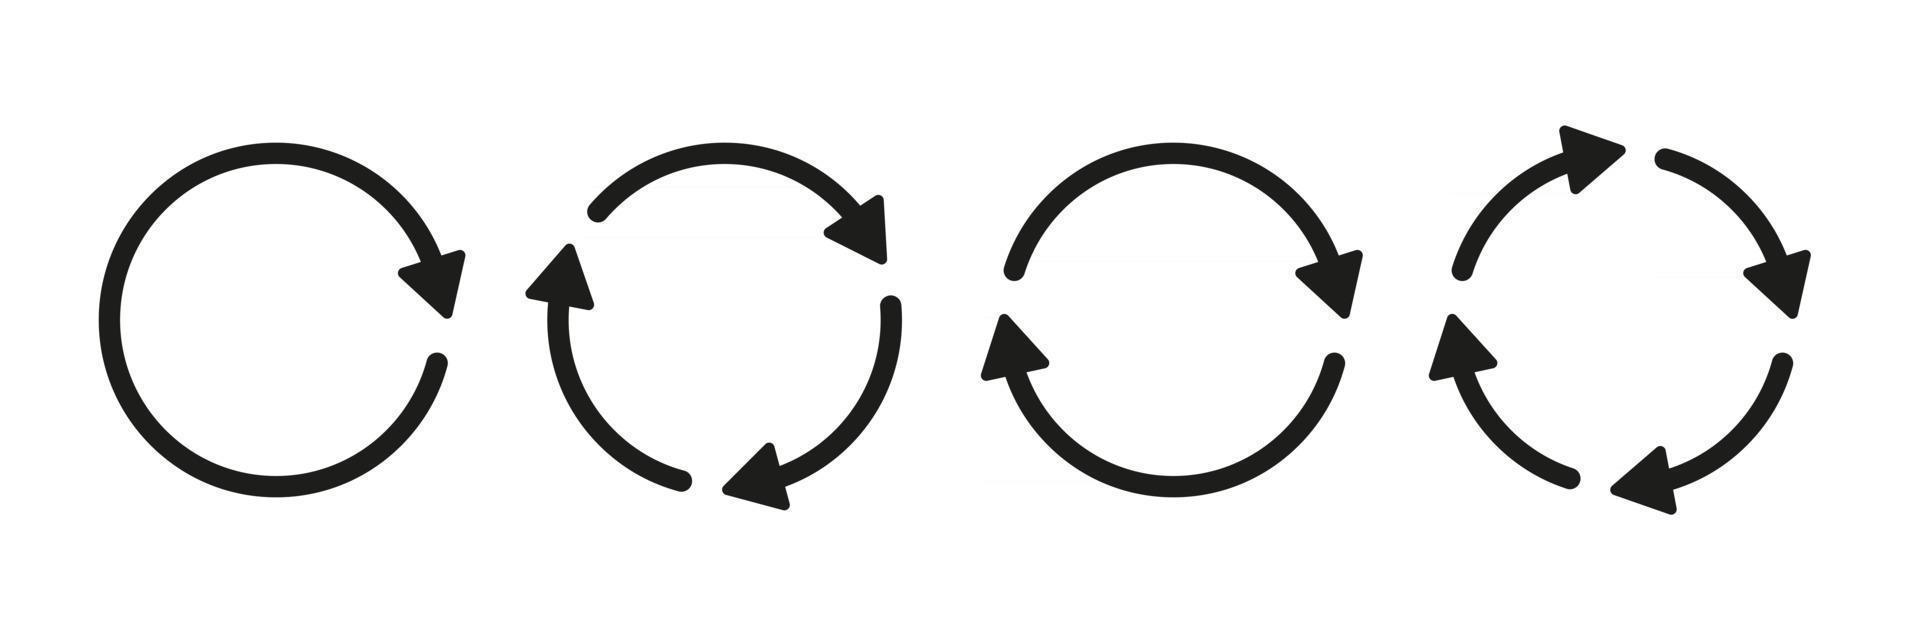 conjunto de ícones de vetor de seta circular